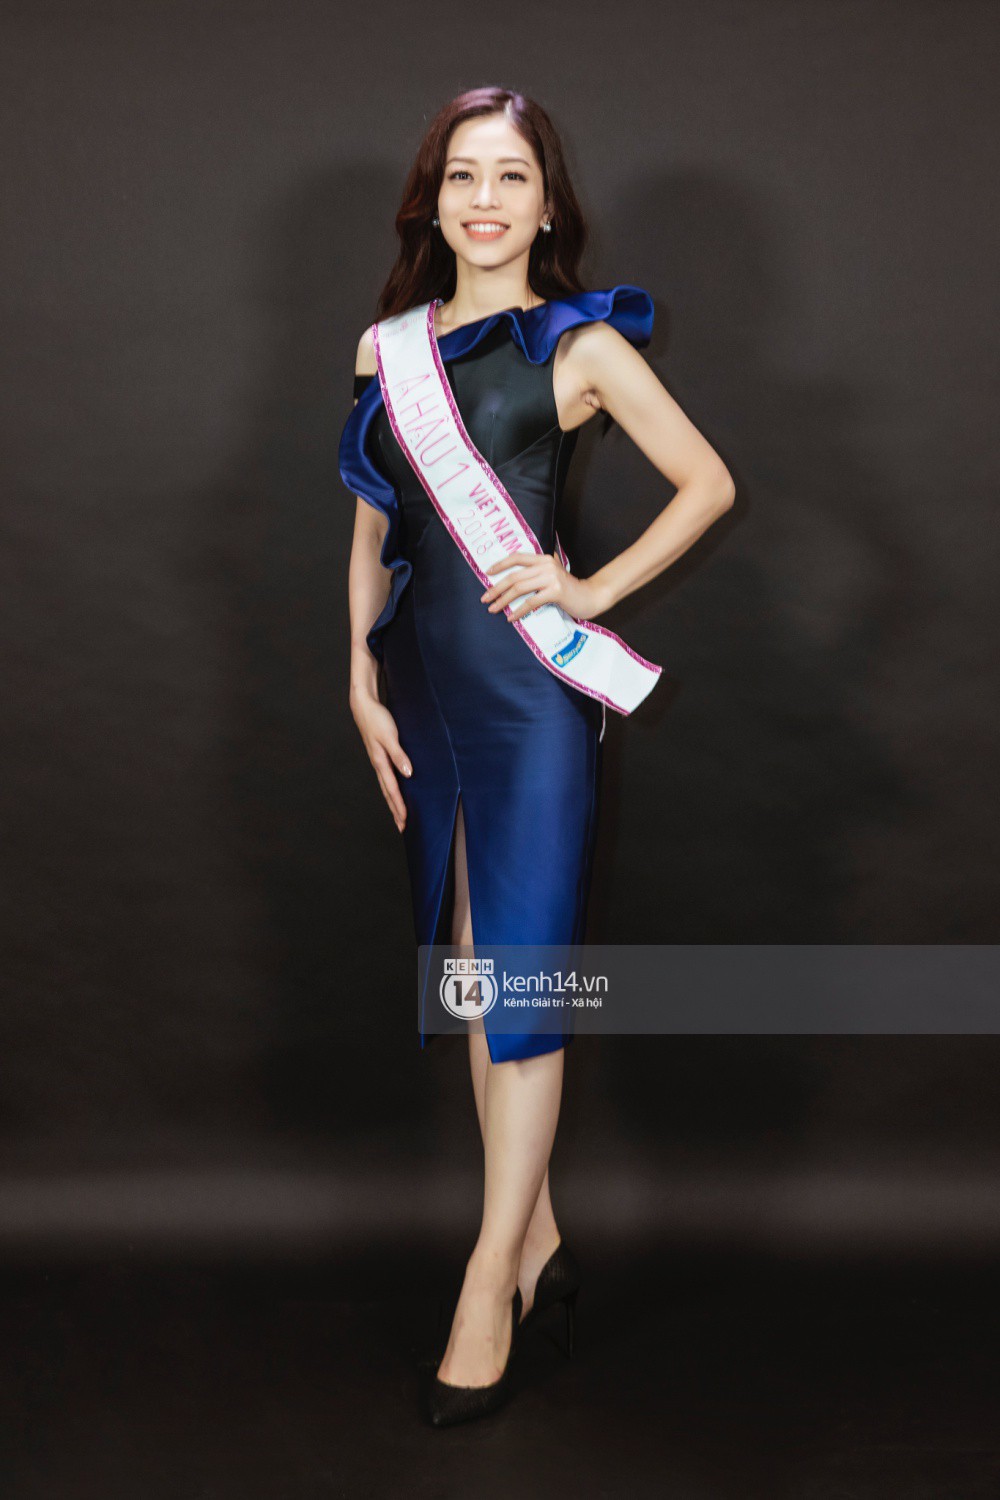 Ngắm cận vẻ đẹp của Top 3 Hoa hậu Việt Nam 2018: Mỹ nhân 2000 được khen sắc sảo, 2 nàng Á mười phân vẹn mười-8